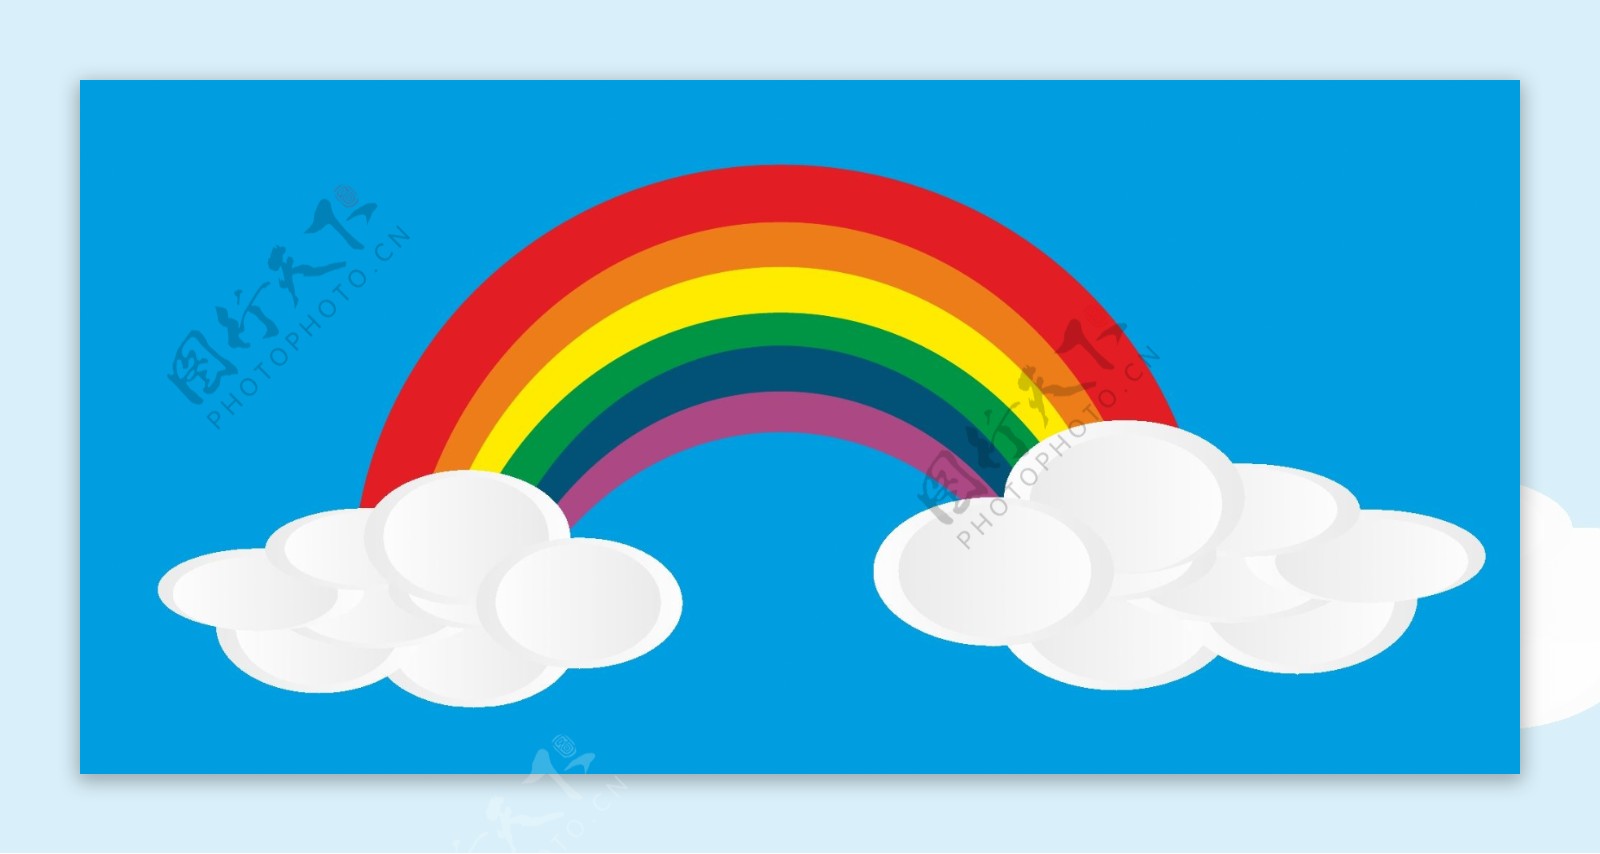 云和彩虹矢量素材